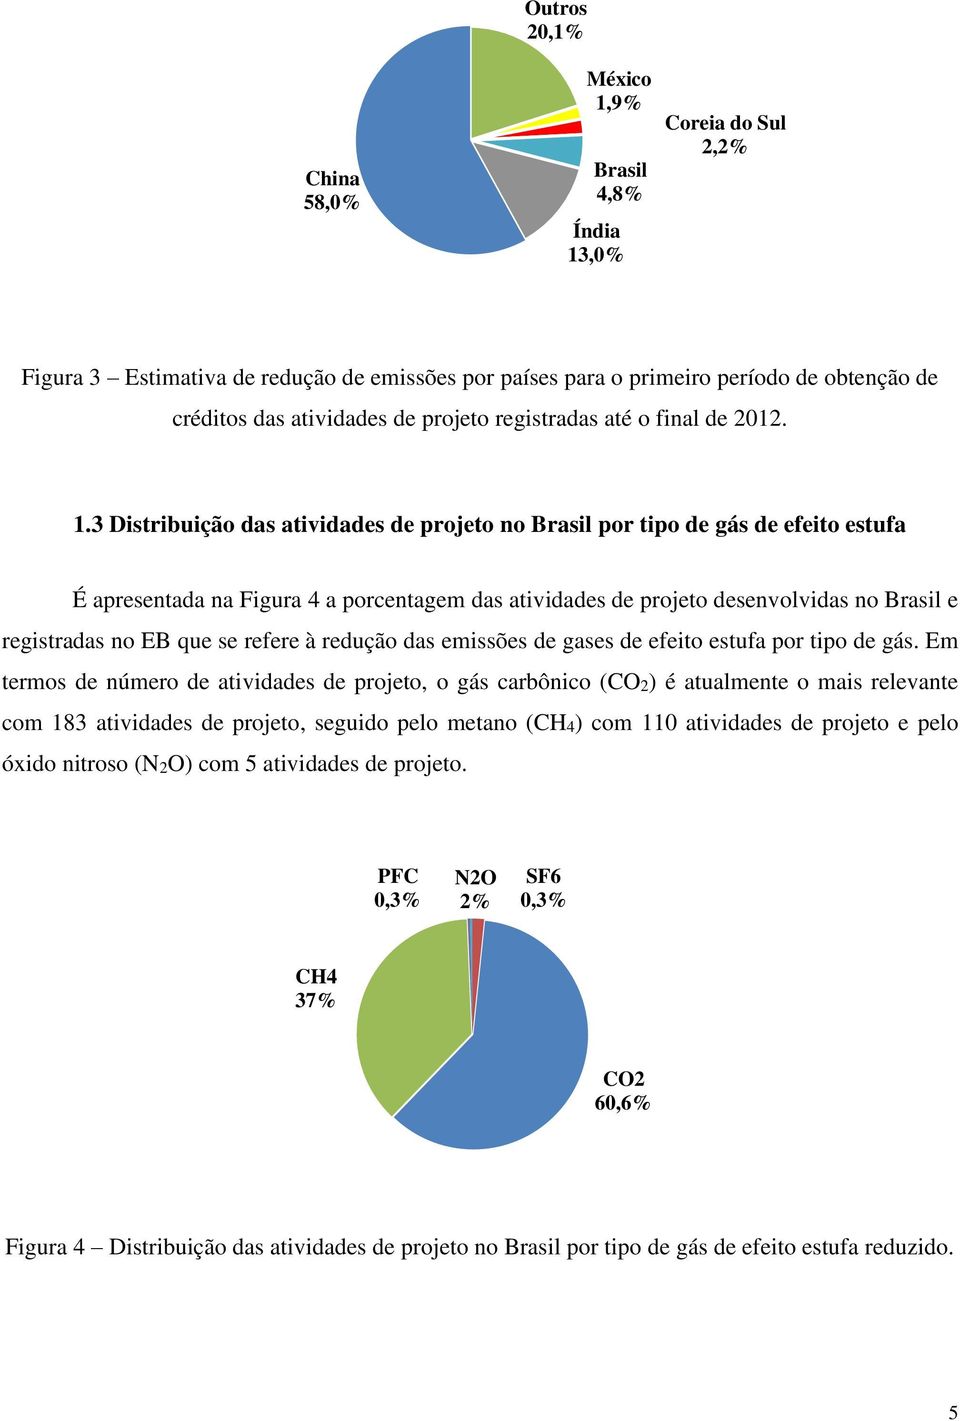 3 Distribuição das atividades de projeto no Brasil por tipo de gás de efeito estufa É apresentada na Figura 4 a porcentagem das atividades de projeto desenvolvidas no Brasil e registradas no EB que